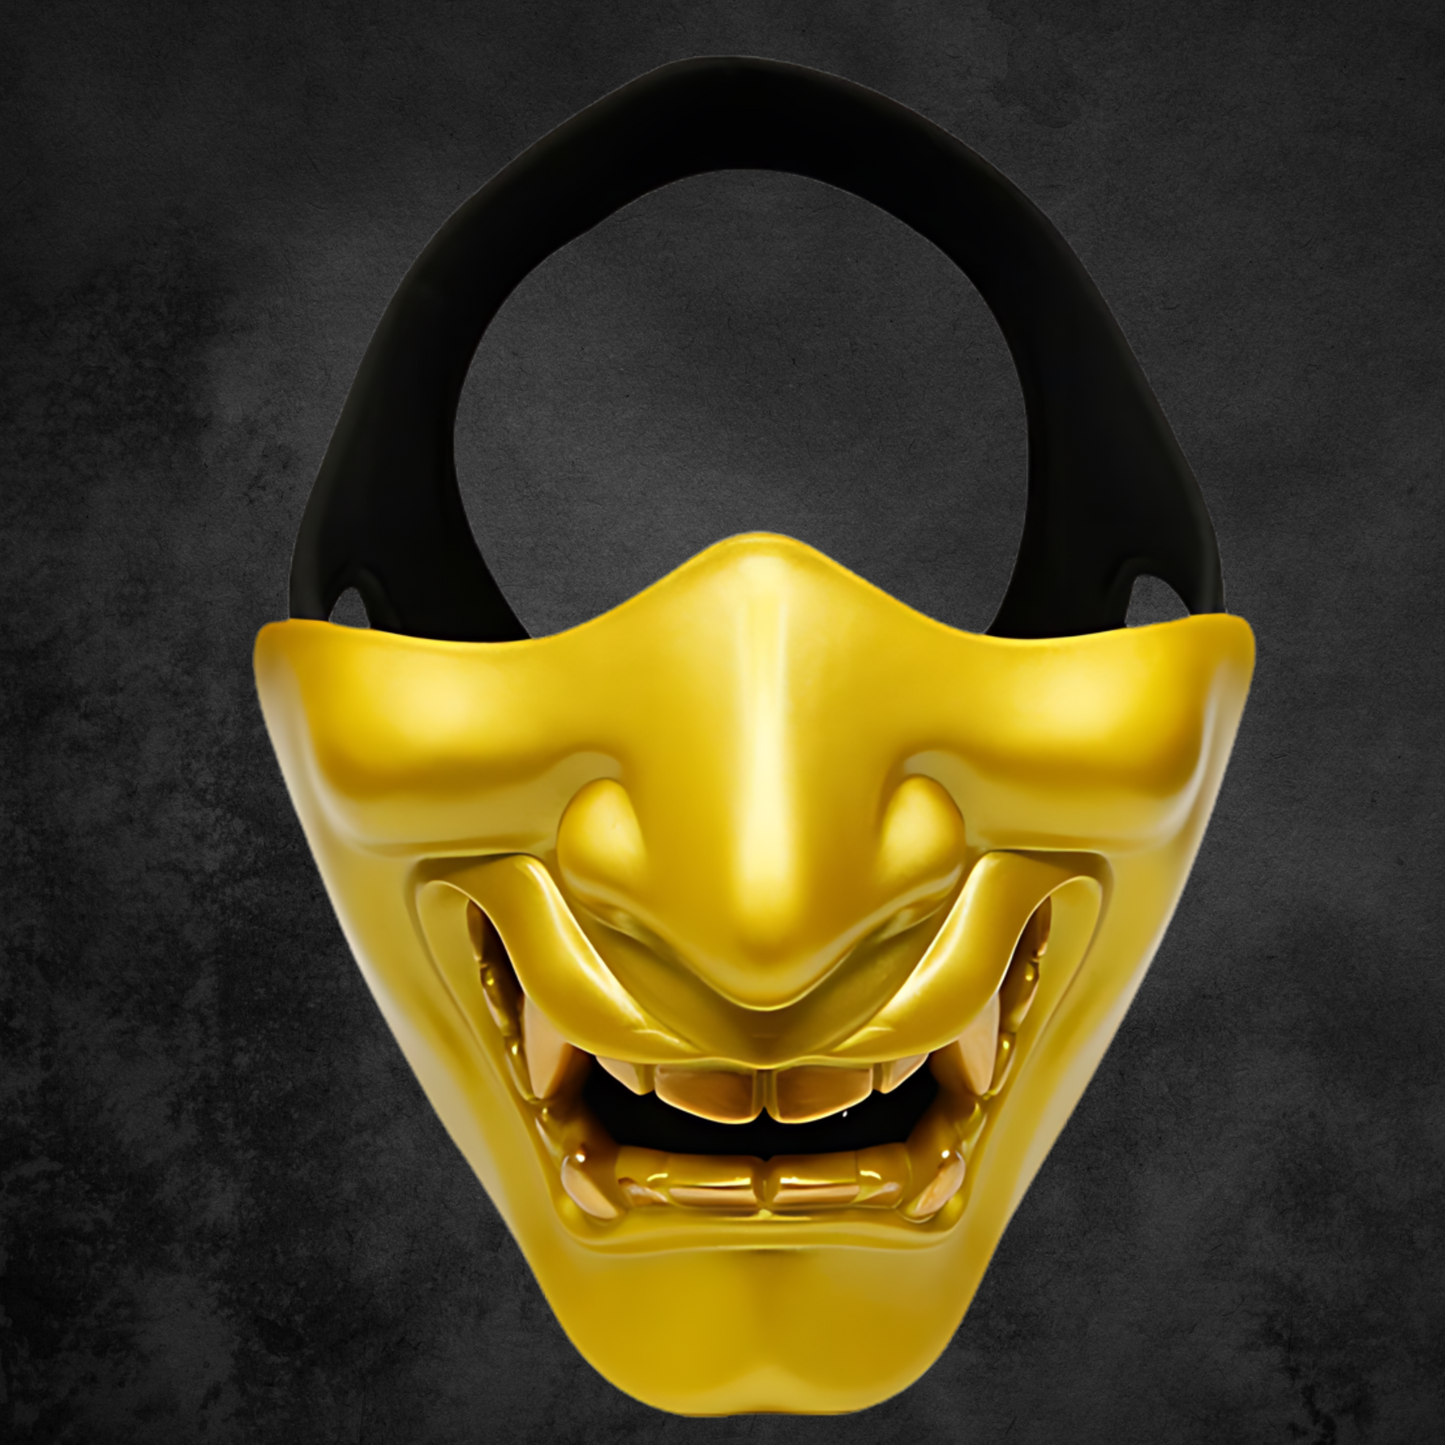 Halbes Oni Maske gelb